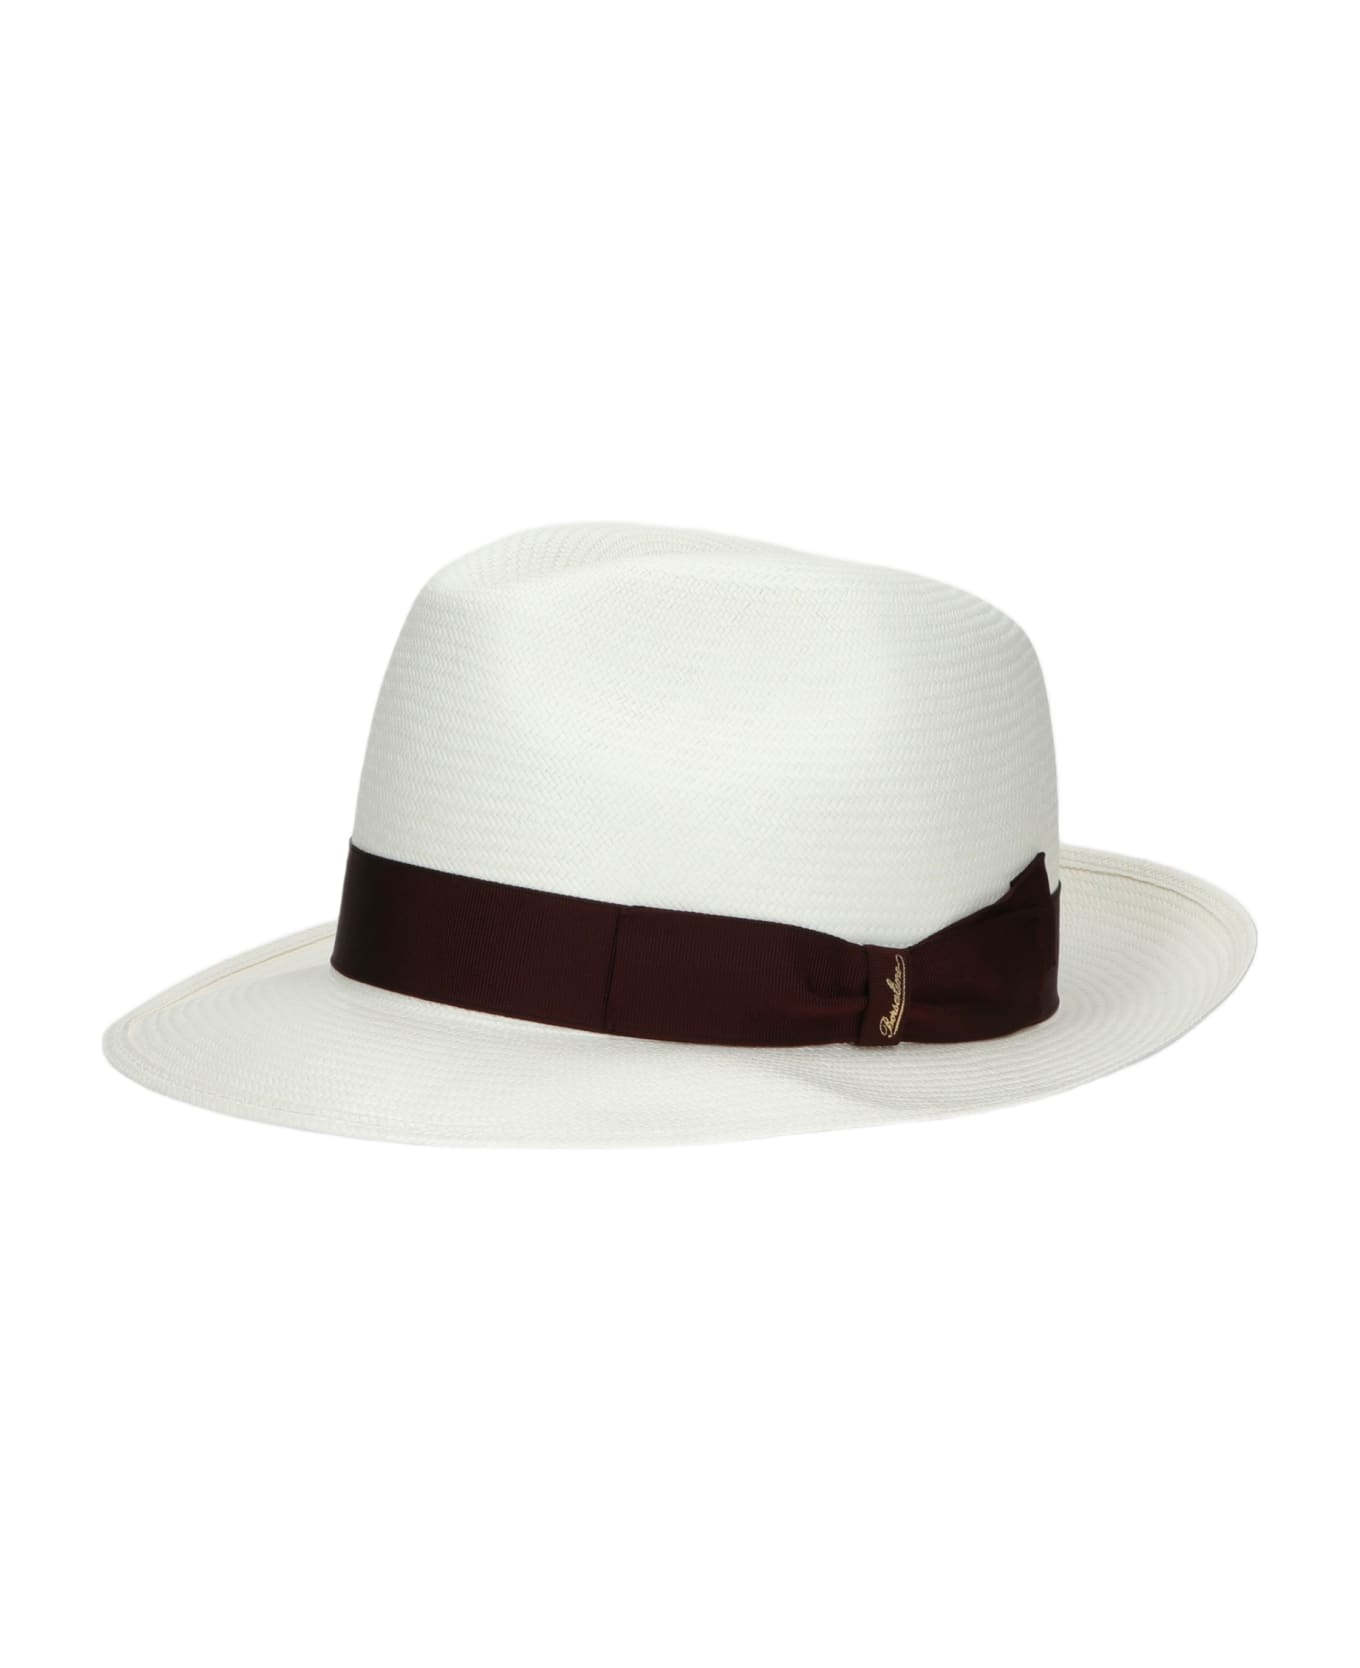 Borsalino Federico Panama Fine Medium Brim - WHITE, WINE RED HAT BAND 帽子